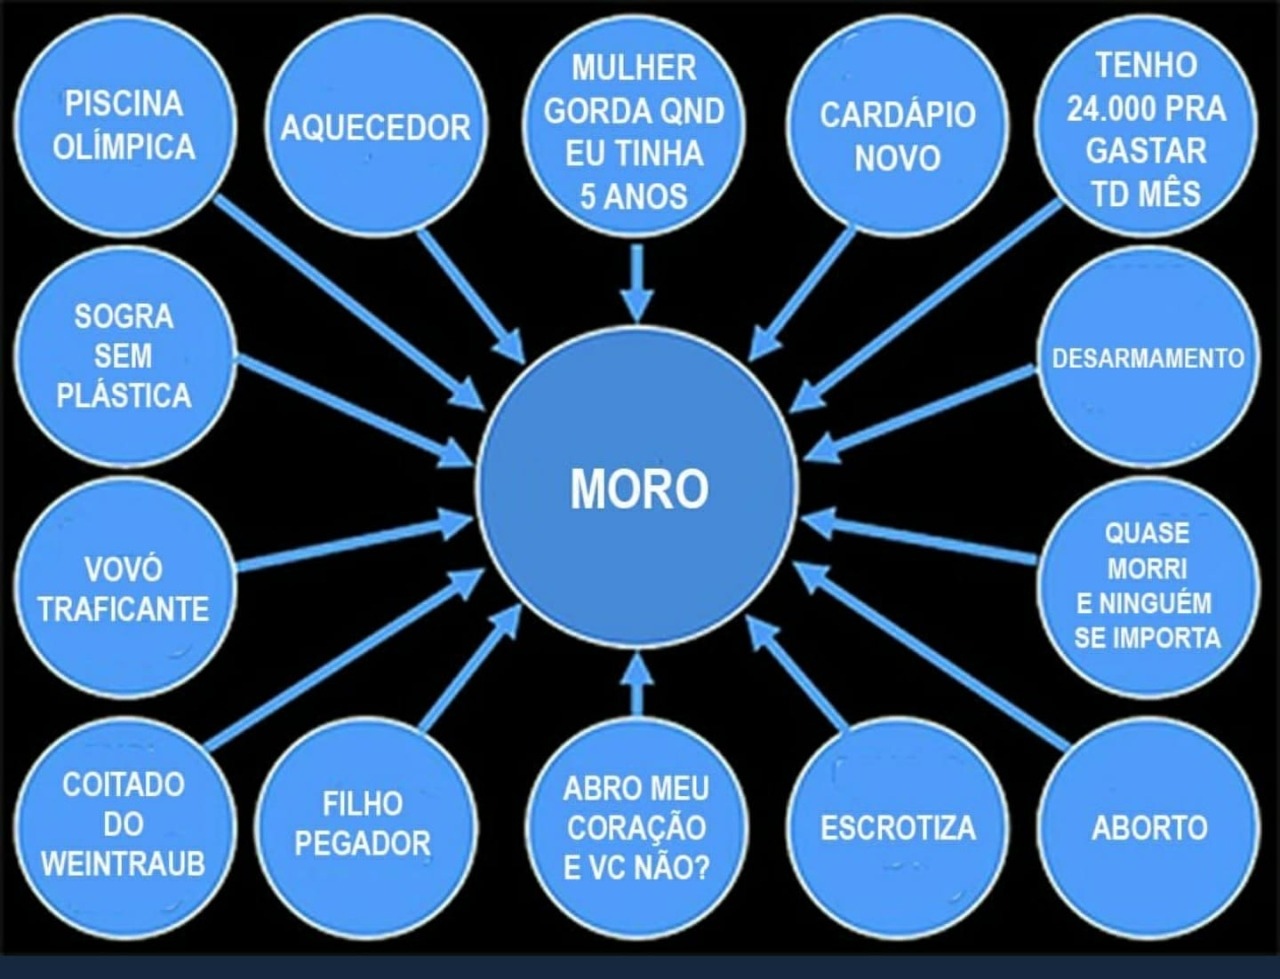 Powerepoint de Bolsonaro/Moro